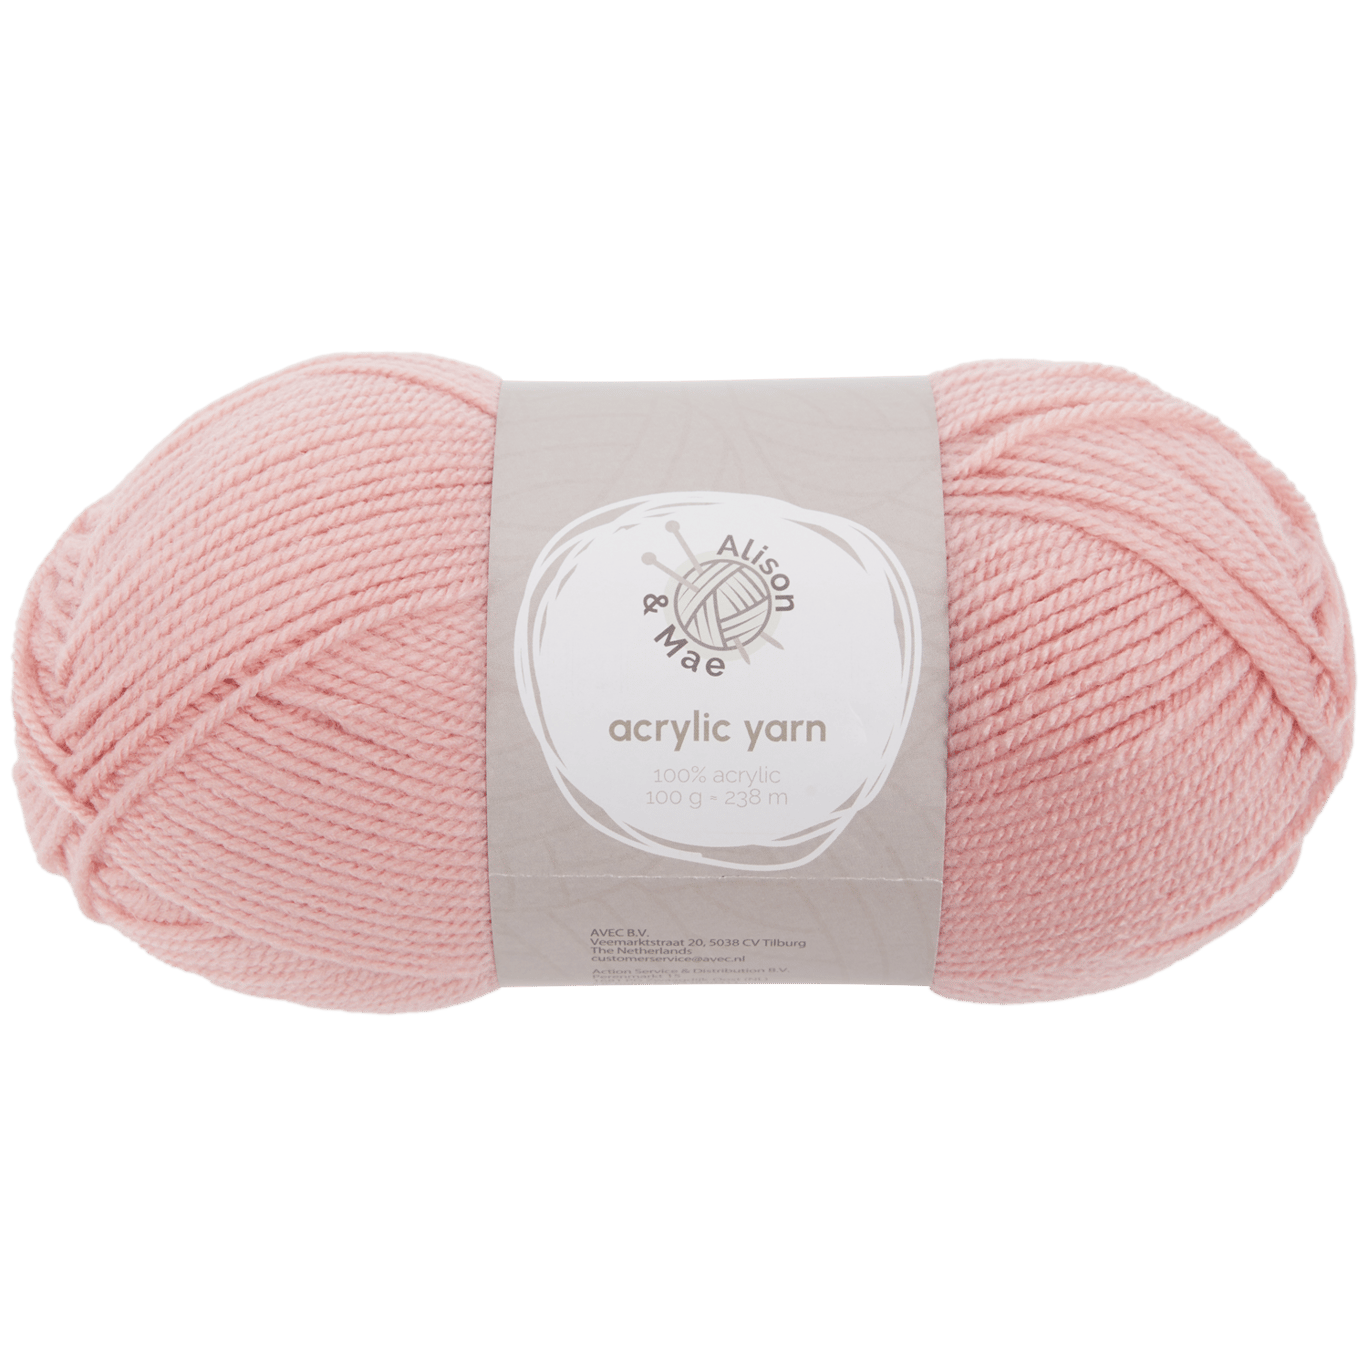 Fil à tricoter Alison & Mae Essentials Rose pâle